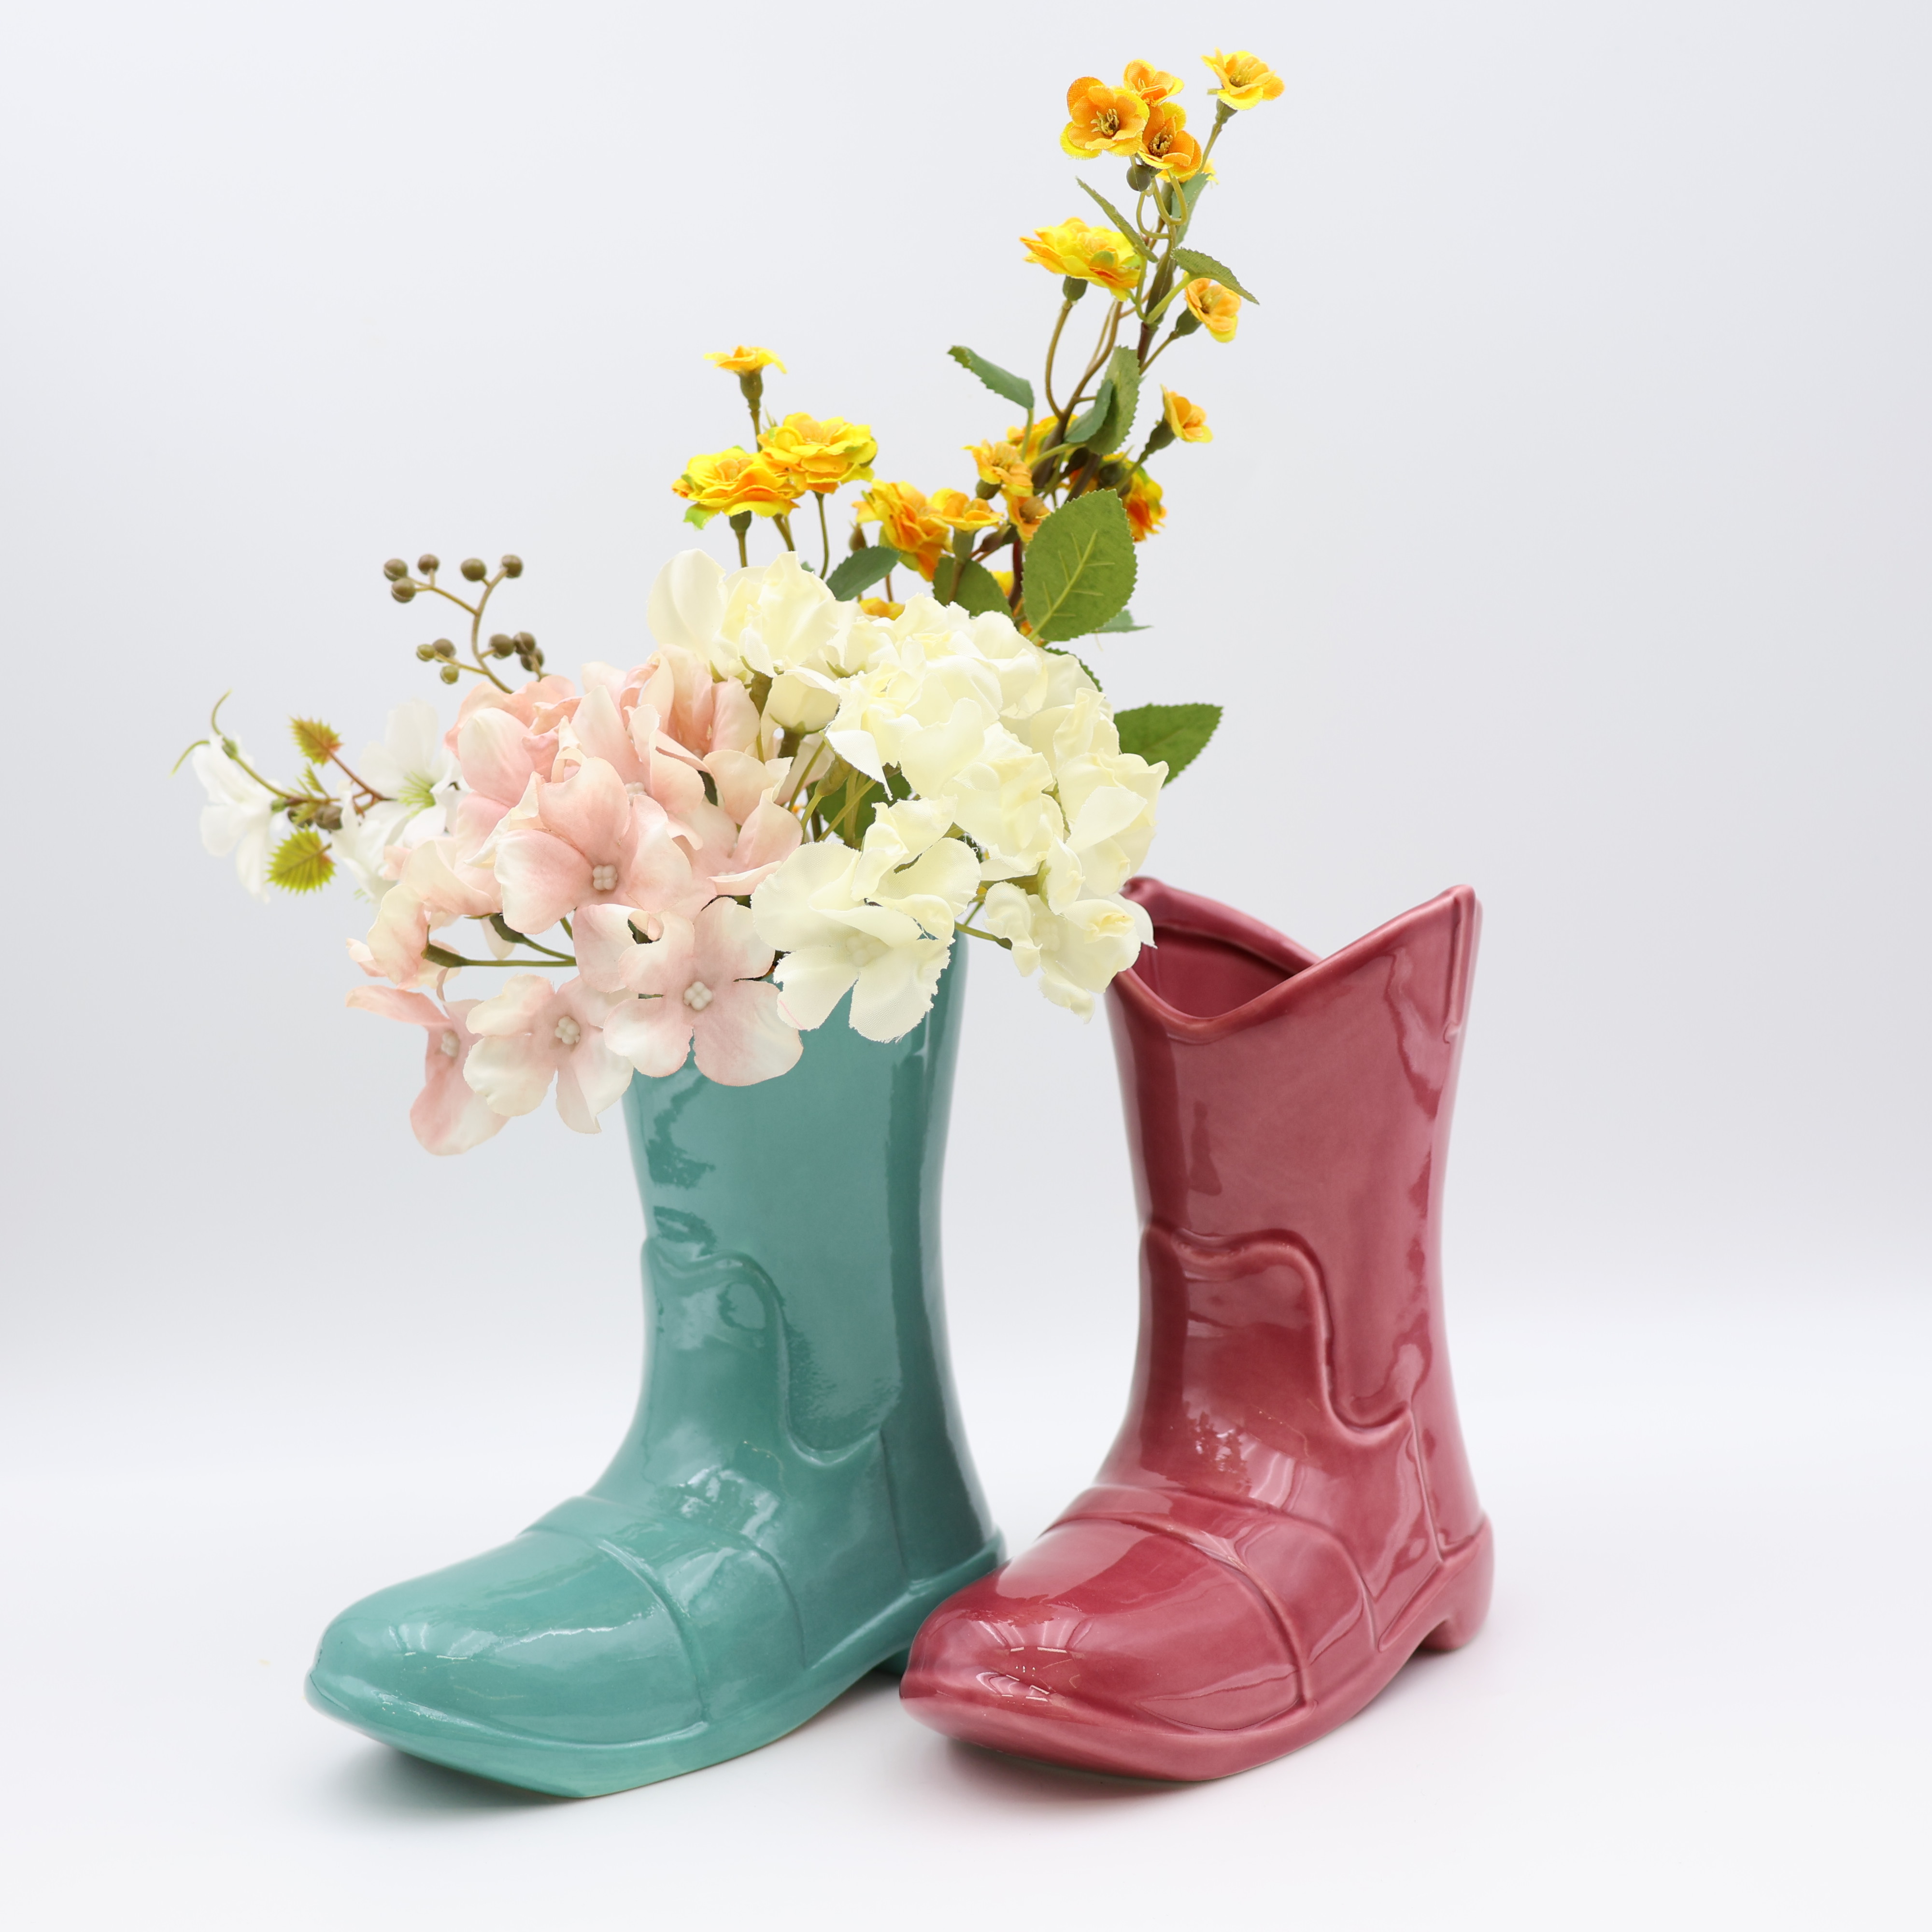 Ċeramika Cowboy Boots Flower Vase